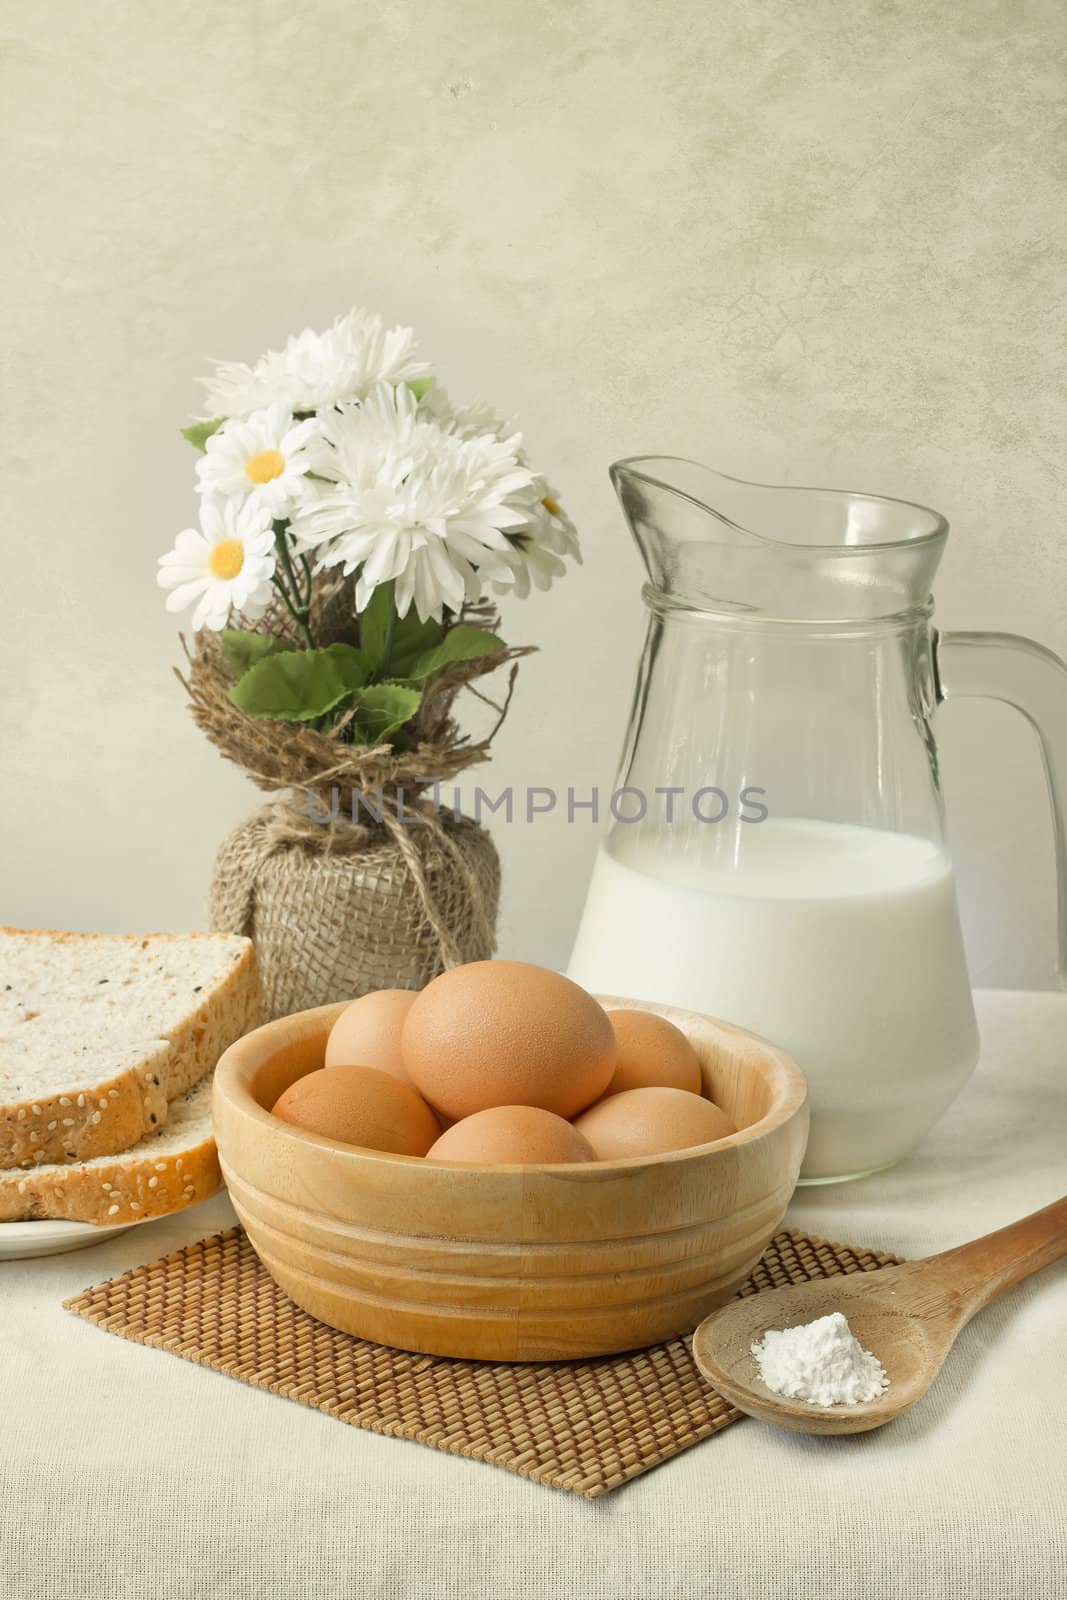 eggs on table by winnond